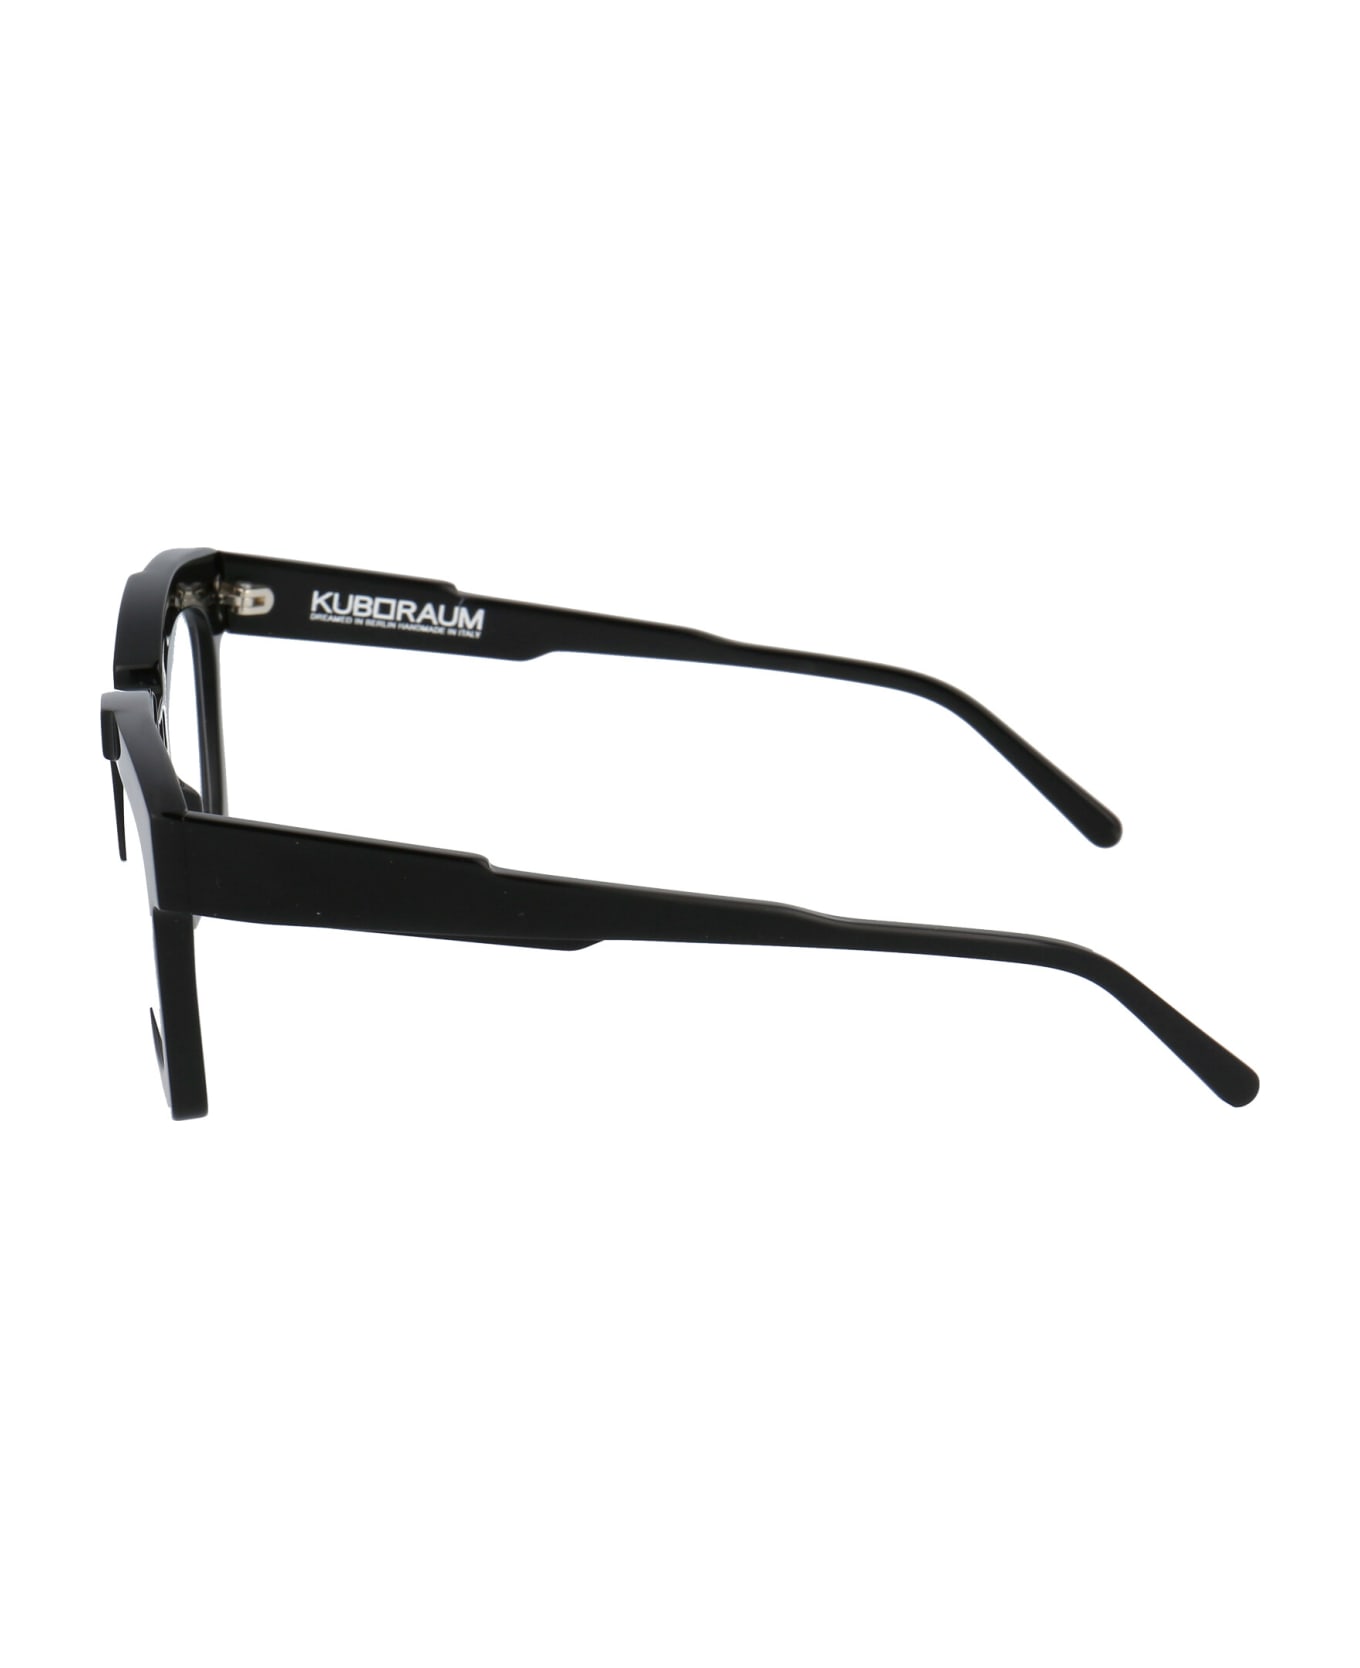 Kuboraum Maske K5 Glasses - BS BLACK